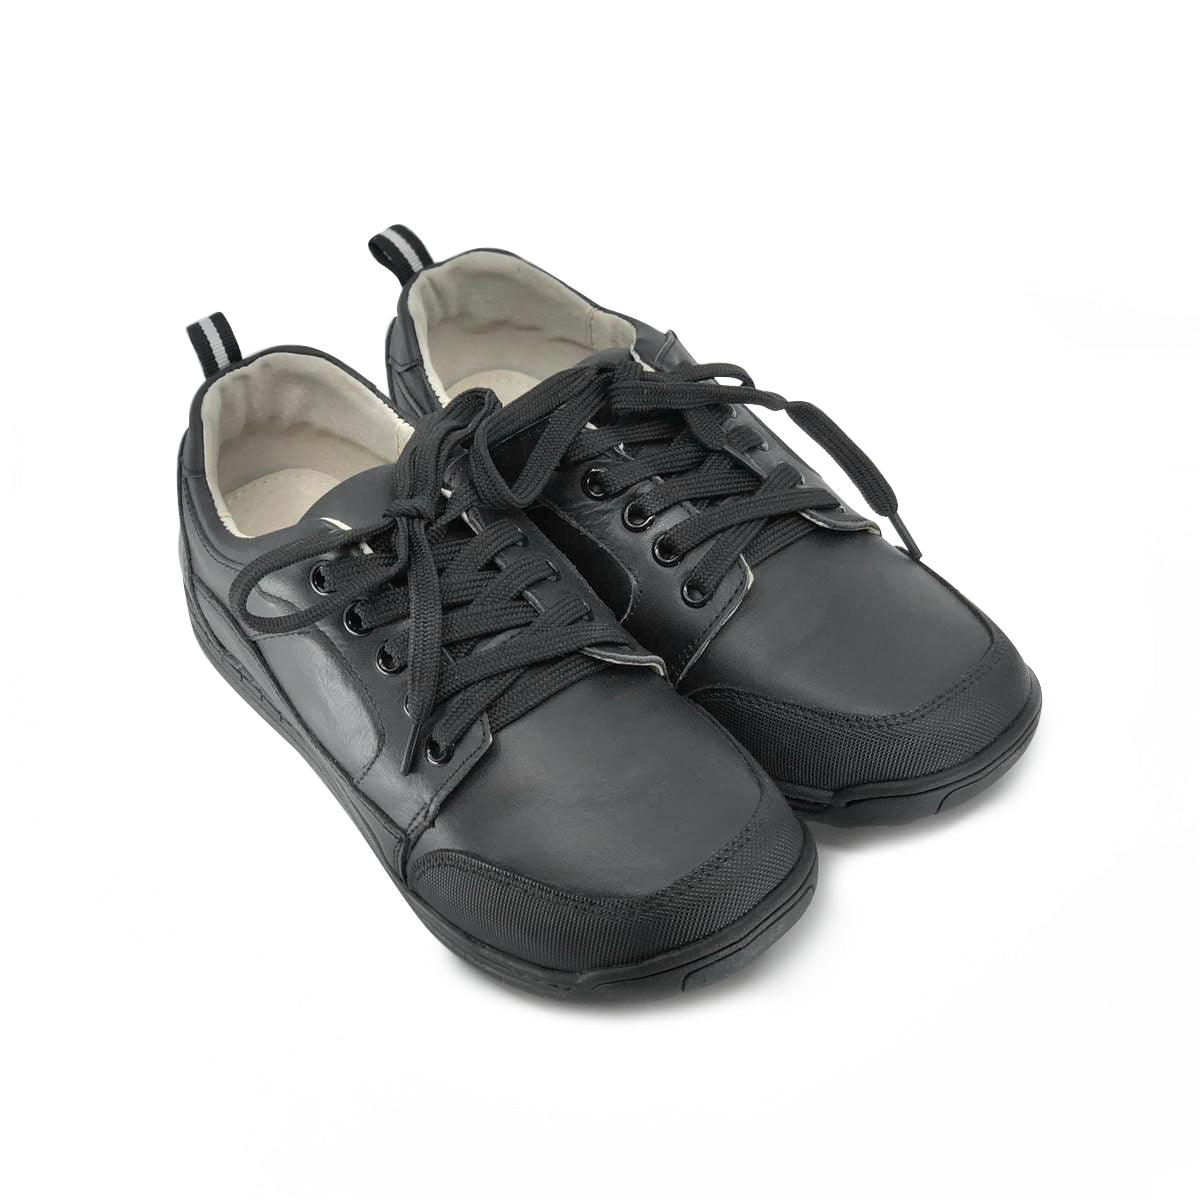 Modanisa Lace-Up Leather School Shoes De Louvre Shoes